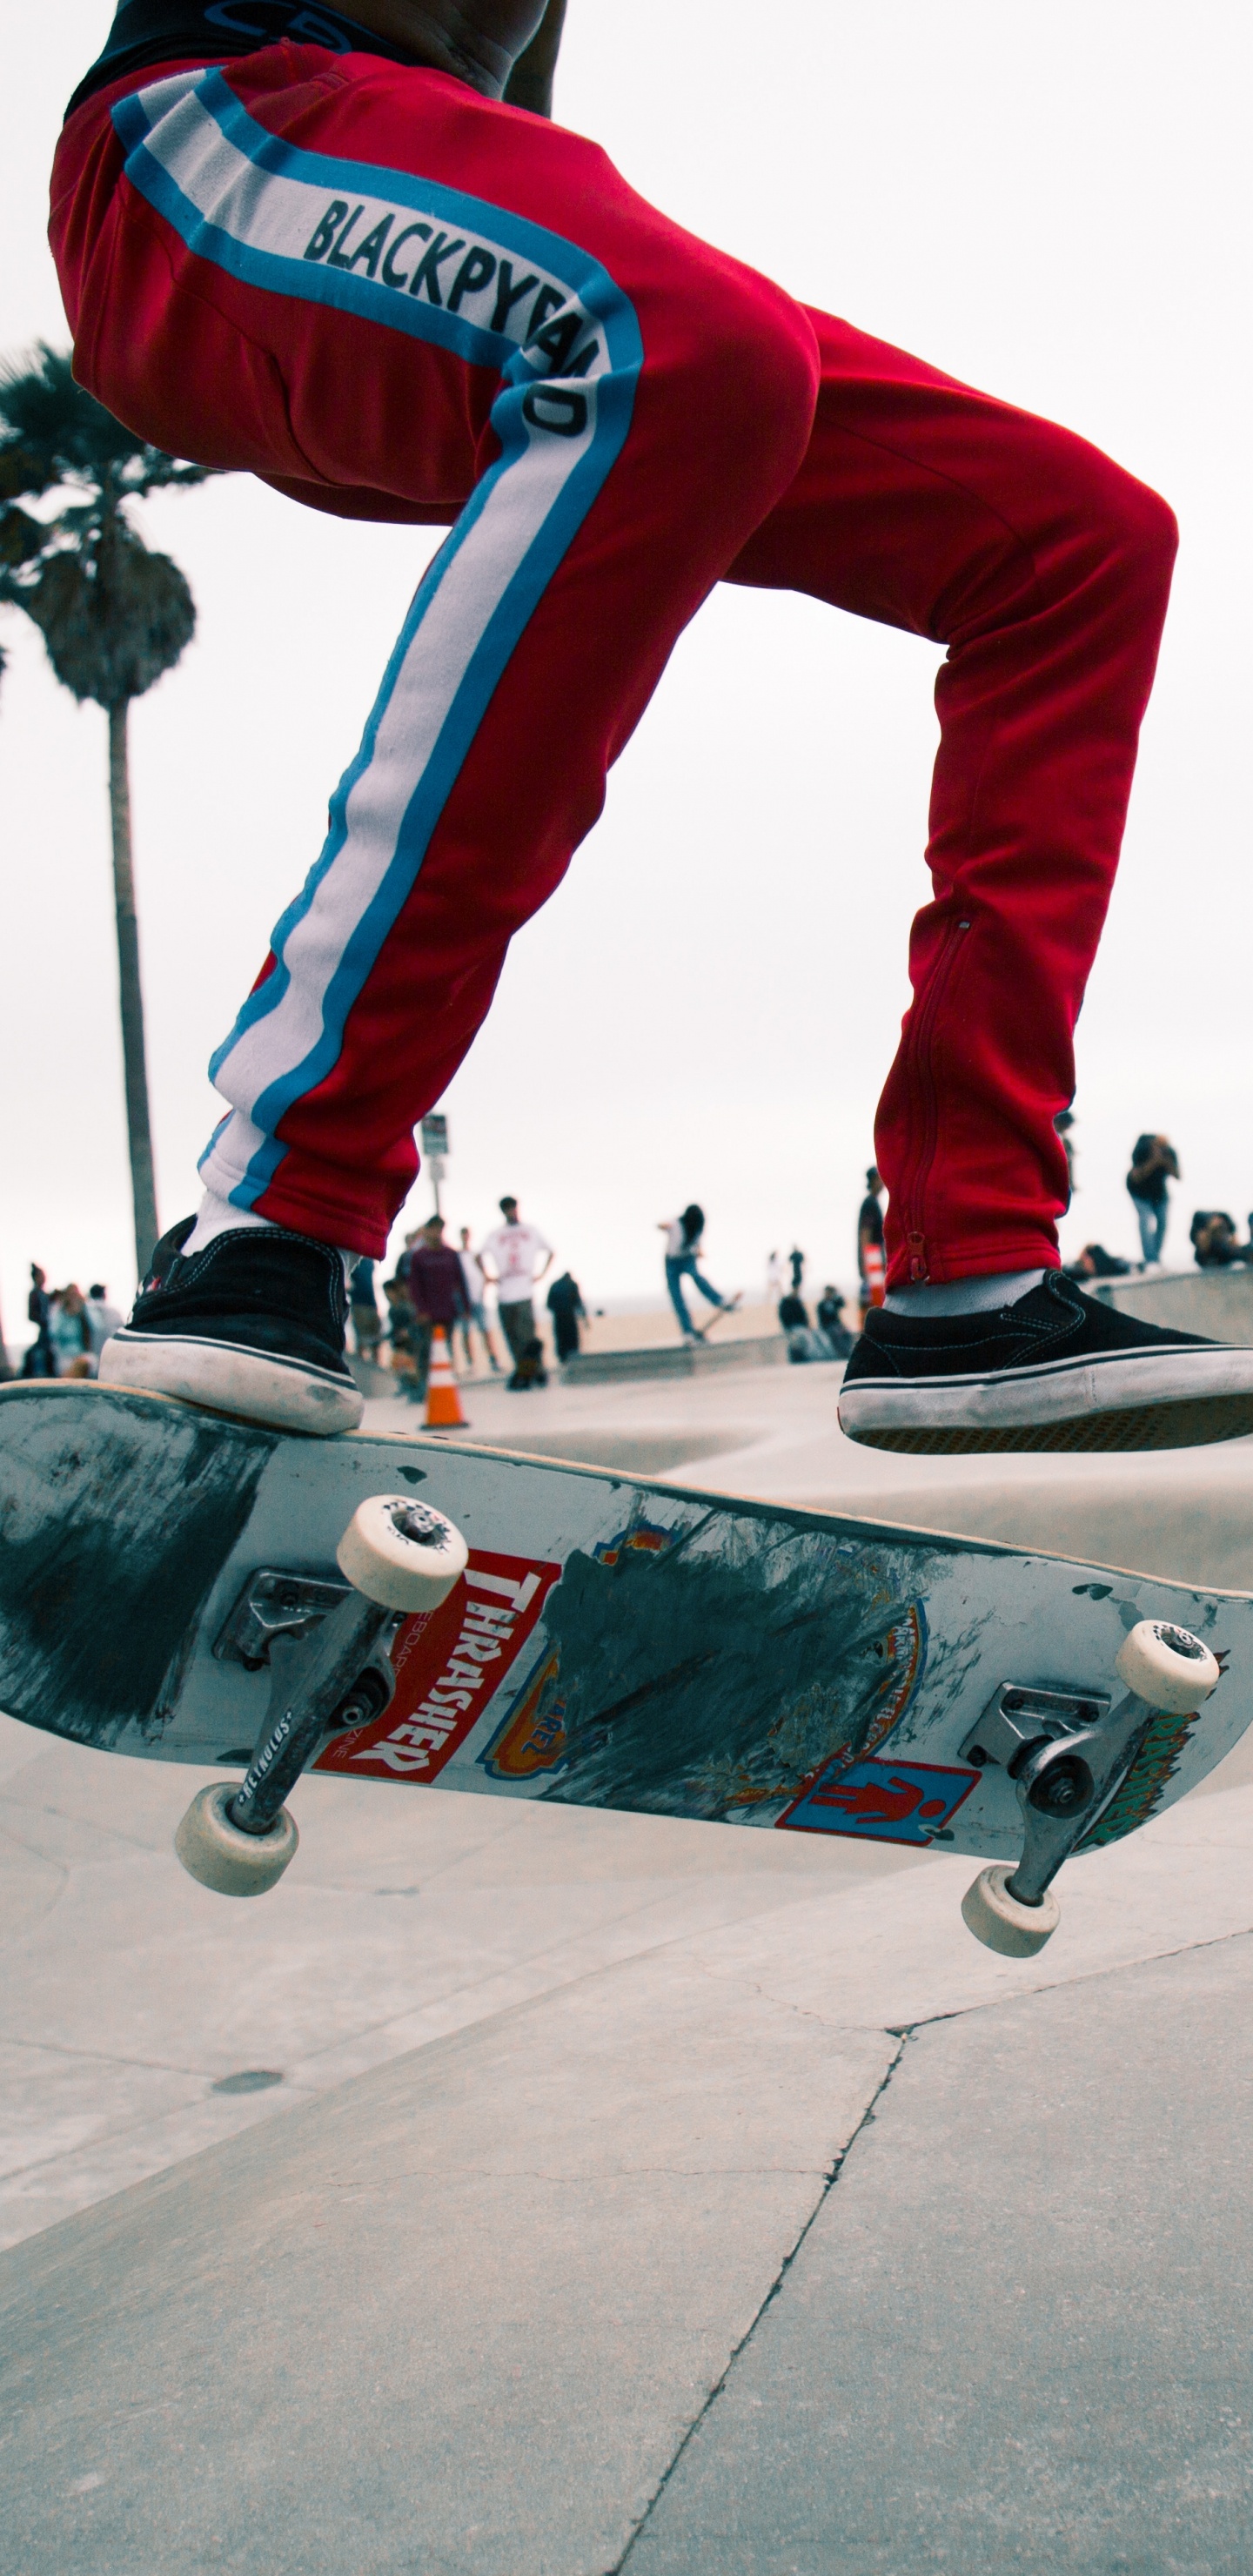 Mann in Roten Hosen Und Schwarz-weißen Turnschuhen, Die Skateboard Fahren. Wallpaper in 1440x2960 Resolution